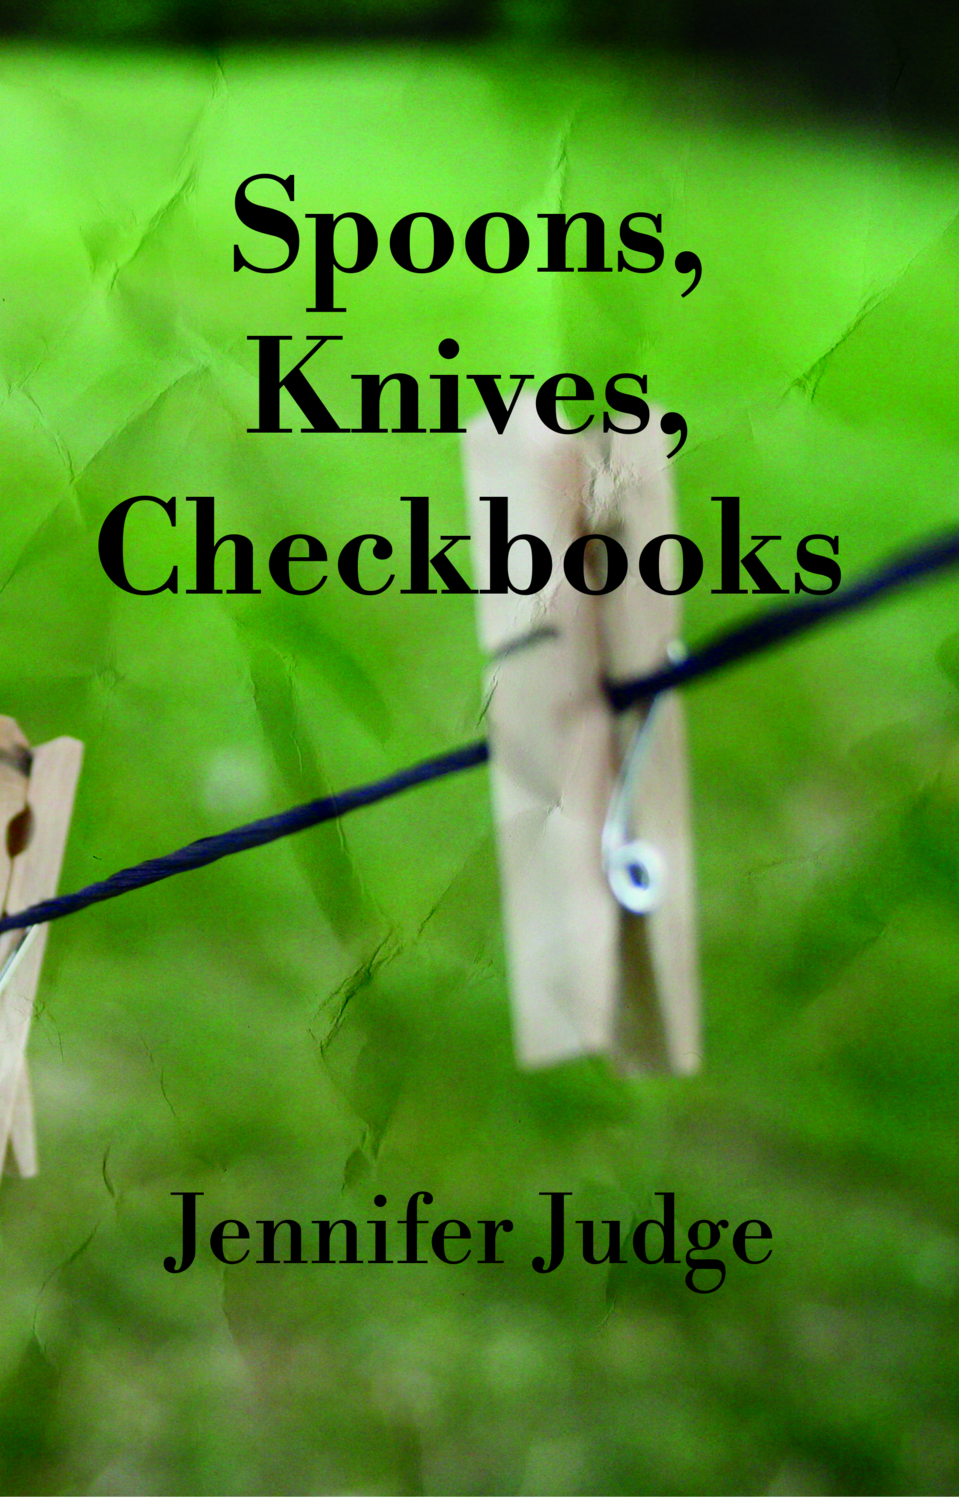 Spoons, Knives, Checkbooks, by Jennifer Judge